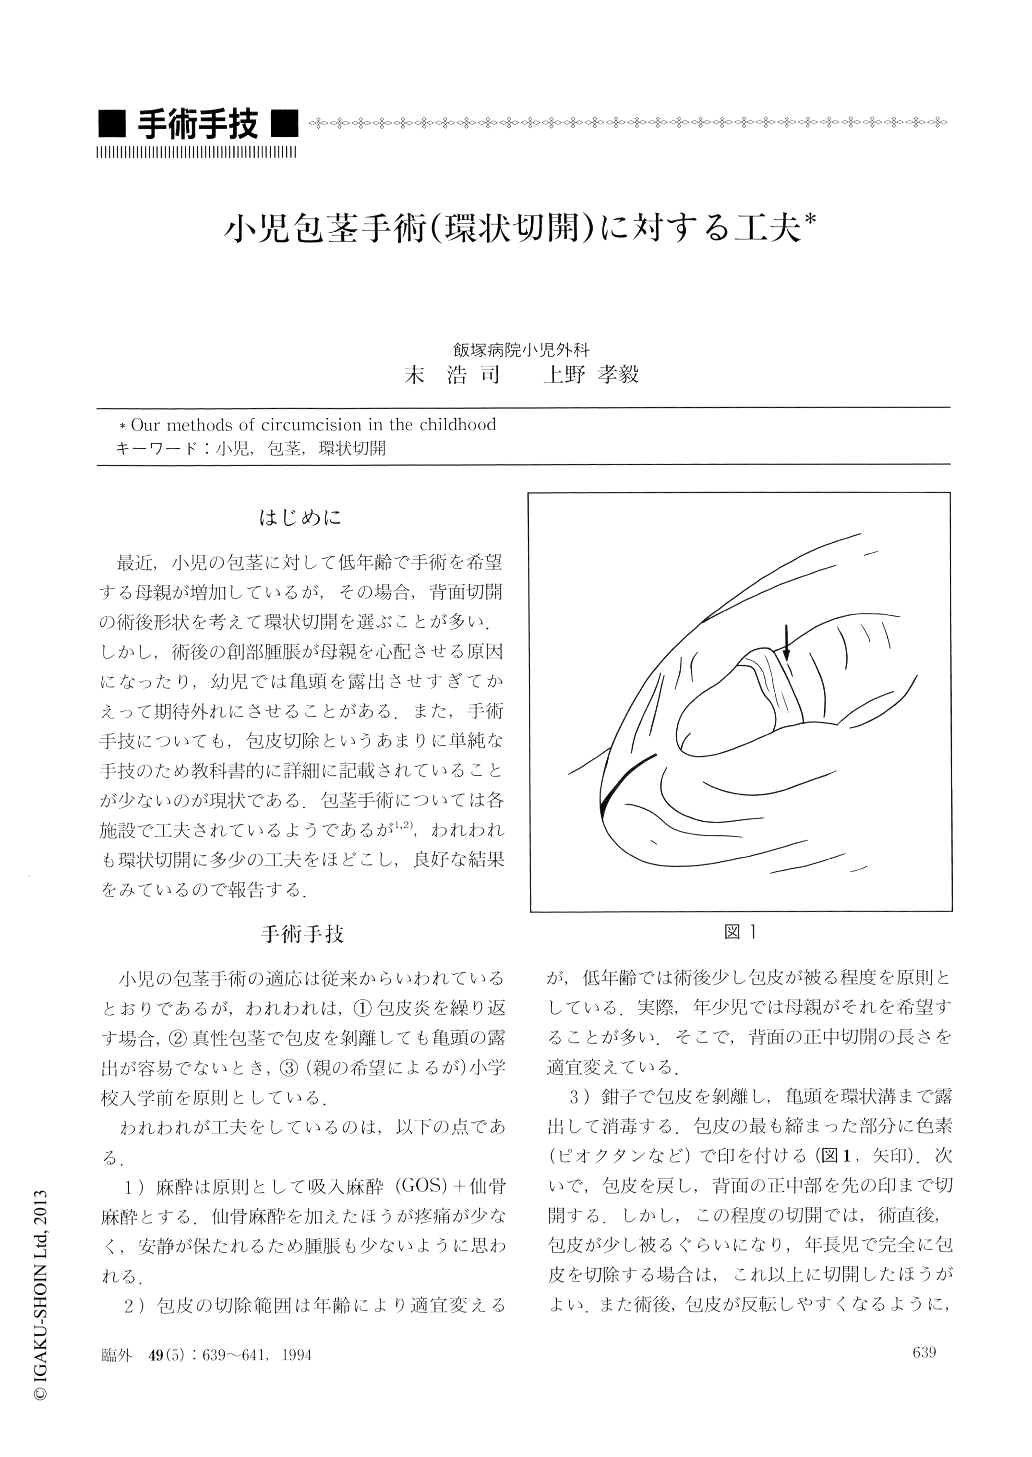 小児包茎手術 環状切開 に対する工夫 臨床外科 49巻5号 医書 Jp